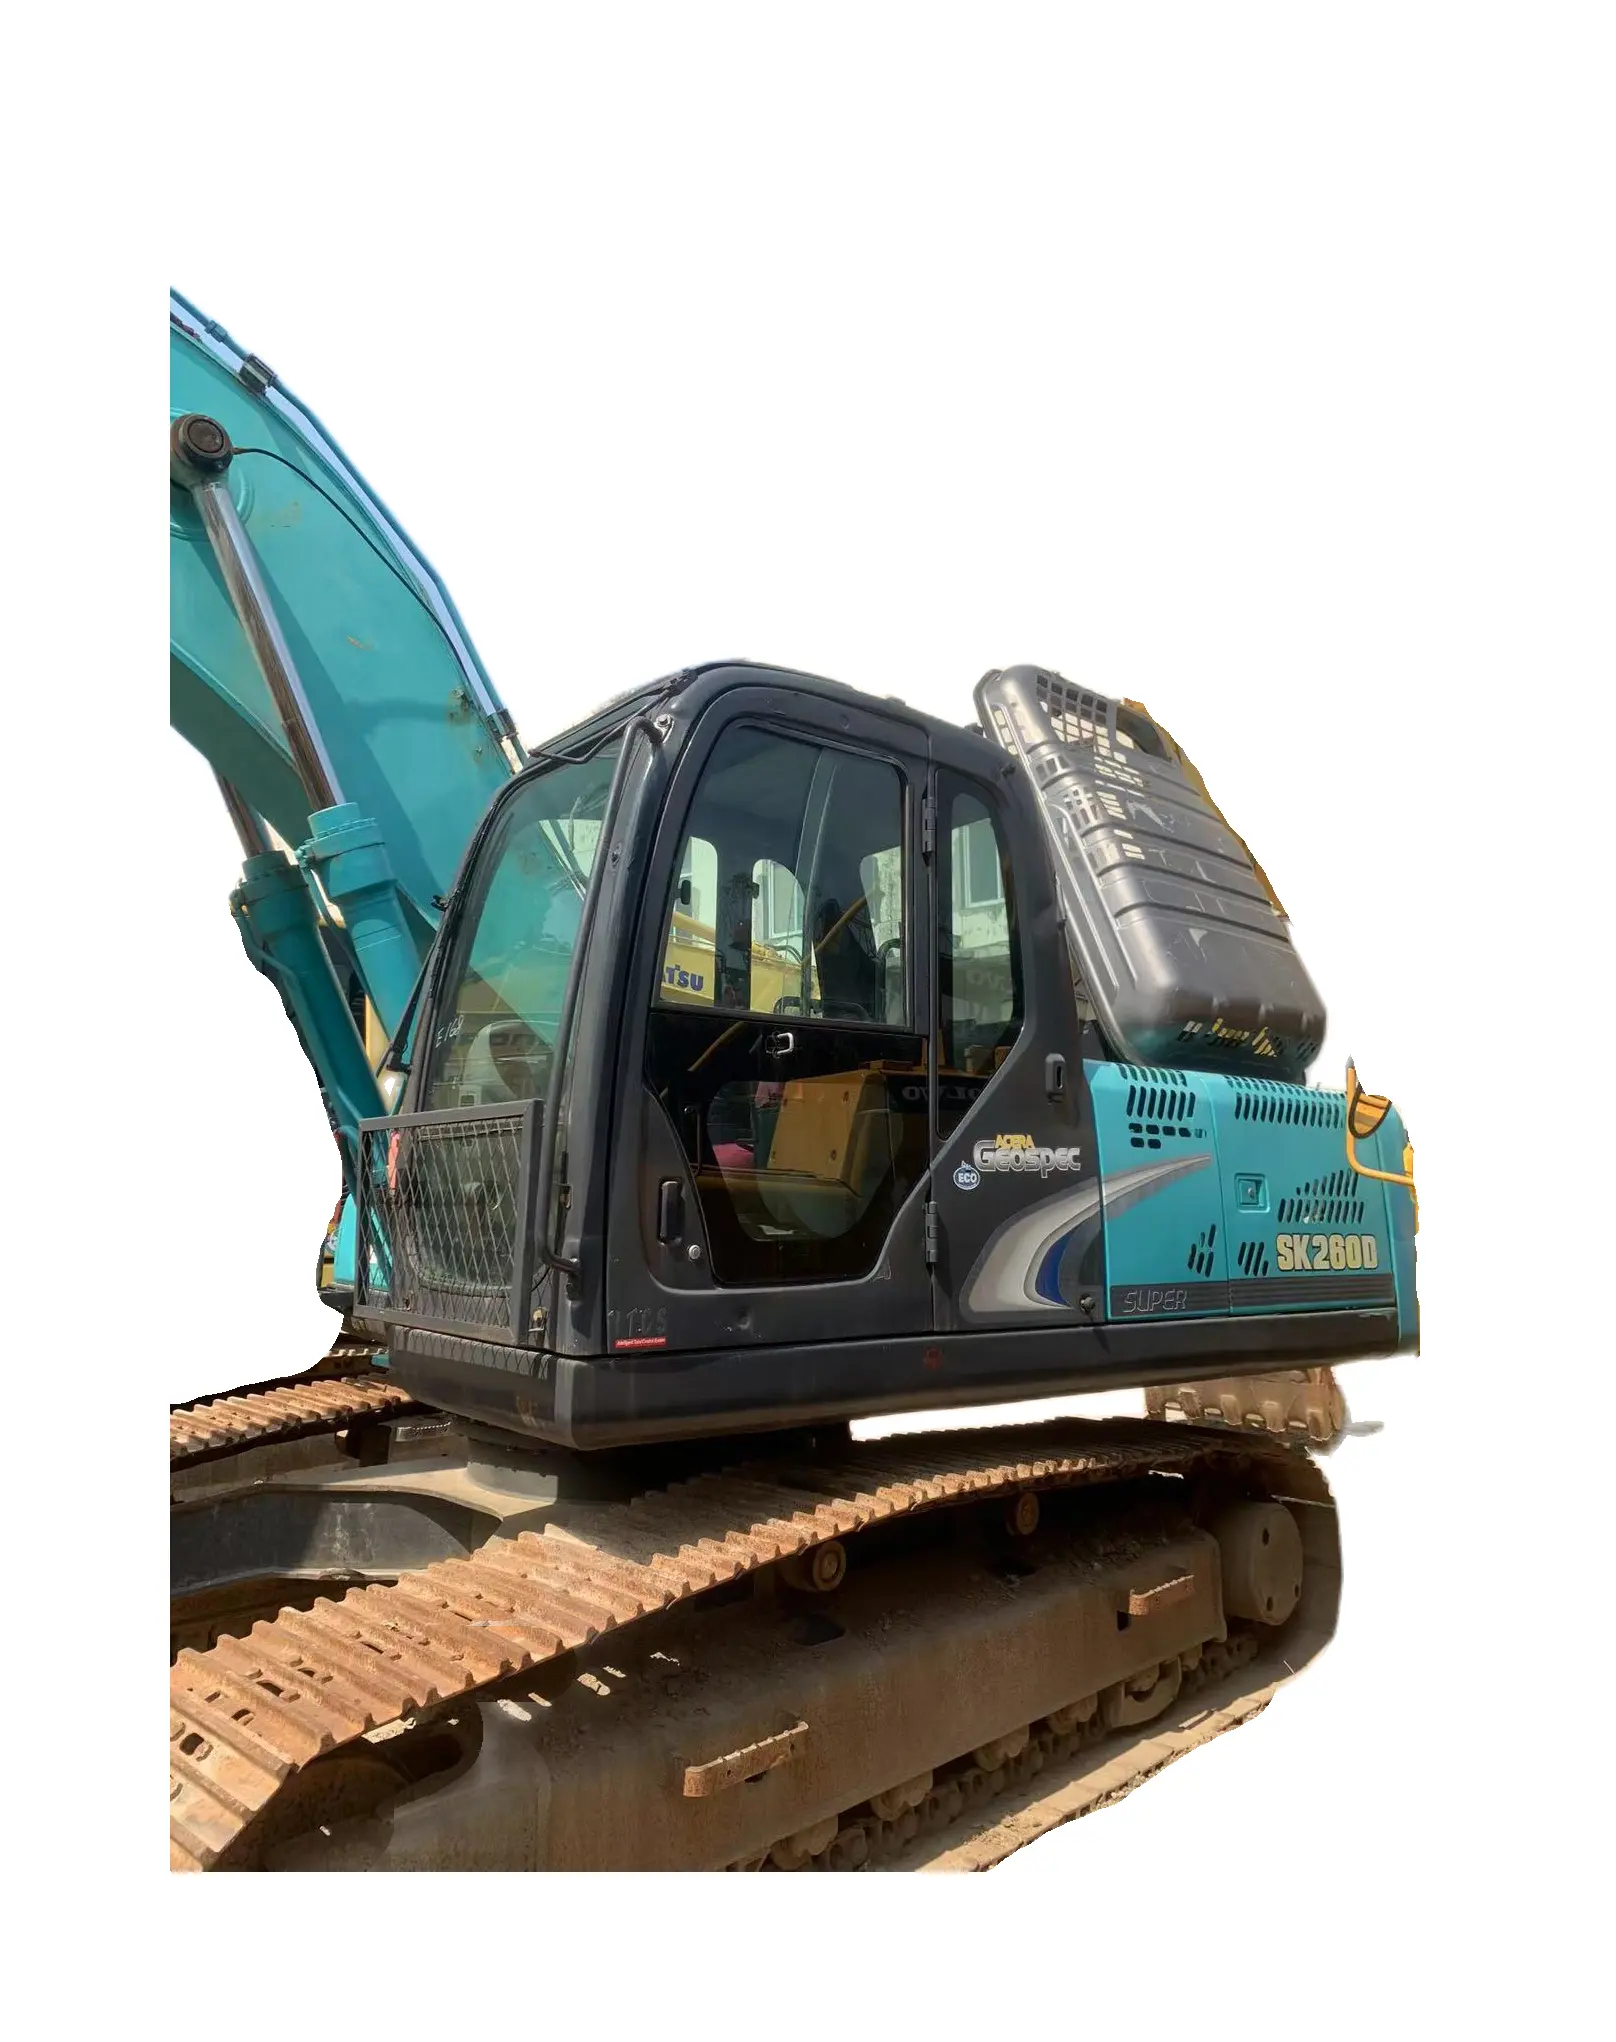 Excavadora Kobelco sk260D, excavadora hidráulica barata, buen estado y precio bajo